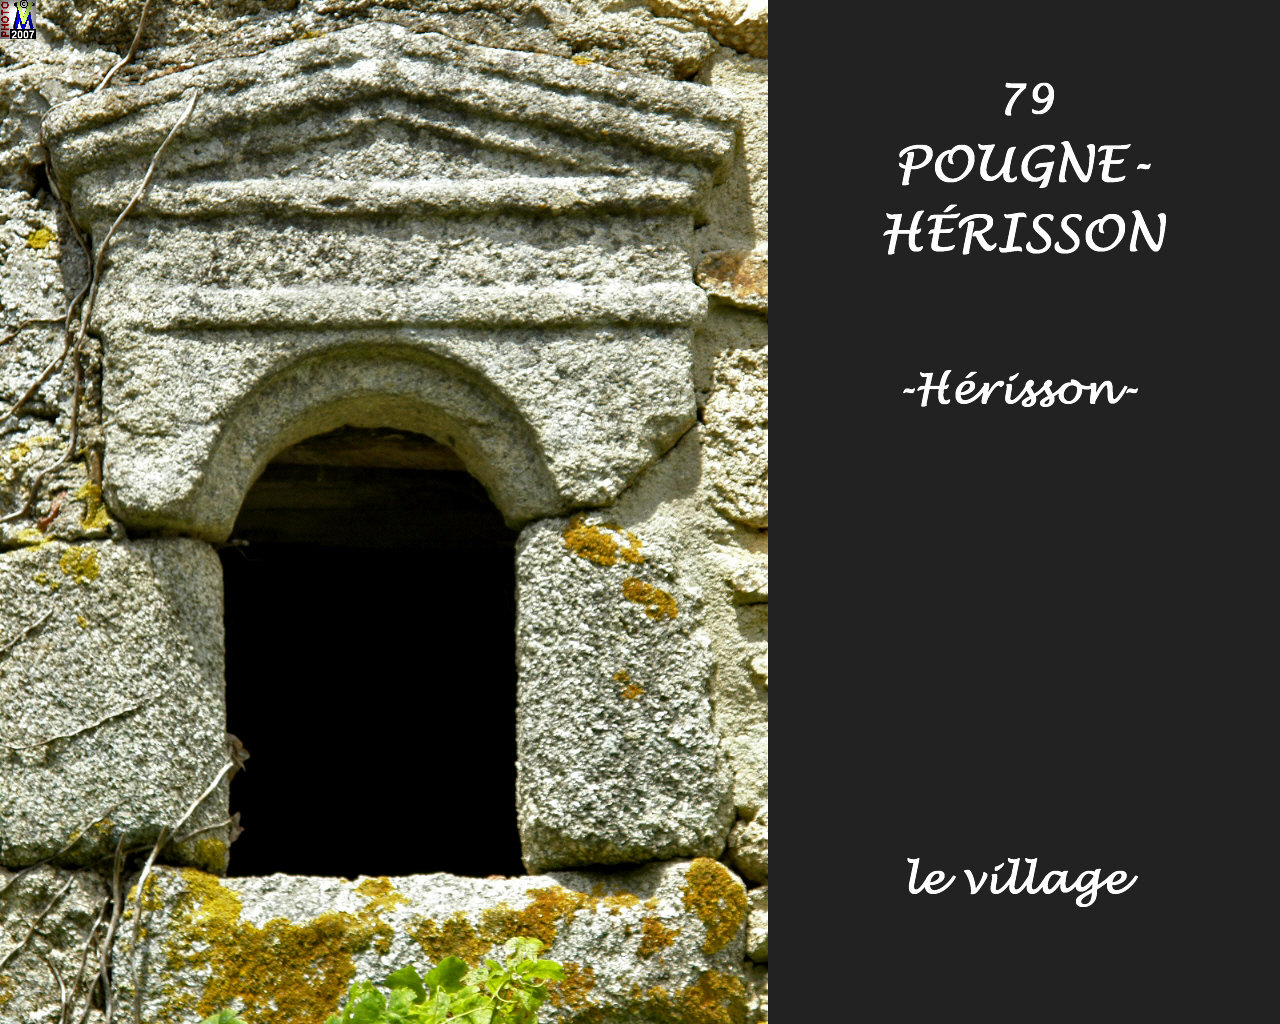 79POUGNE-HERISSON_herisson_village_134.jpg